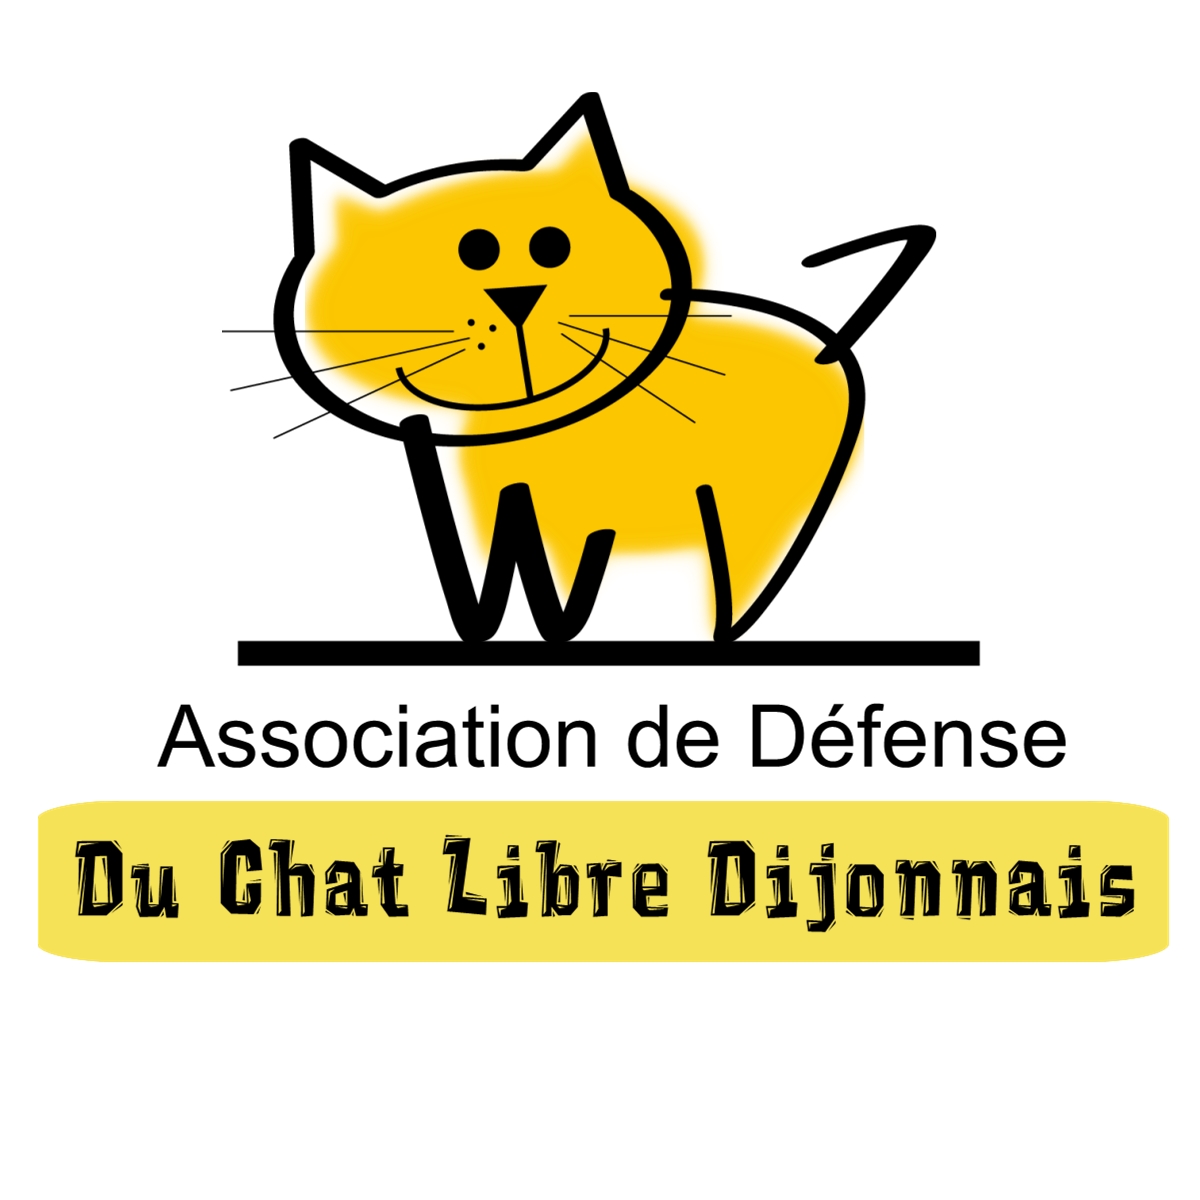 Association de défense du Chat Libre Dijonnais